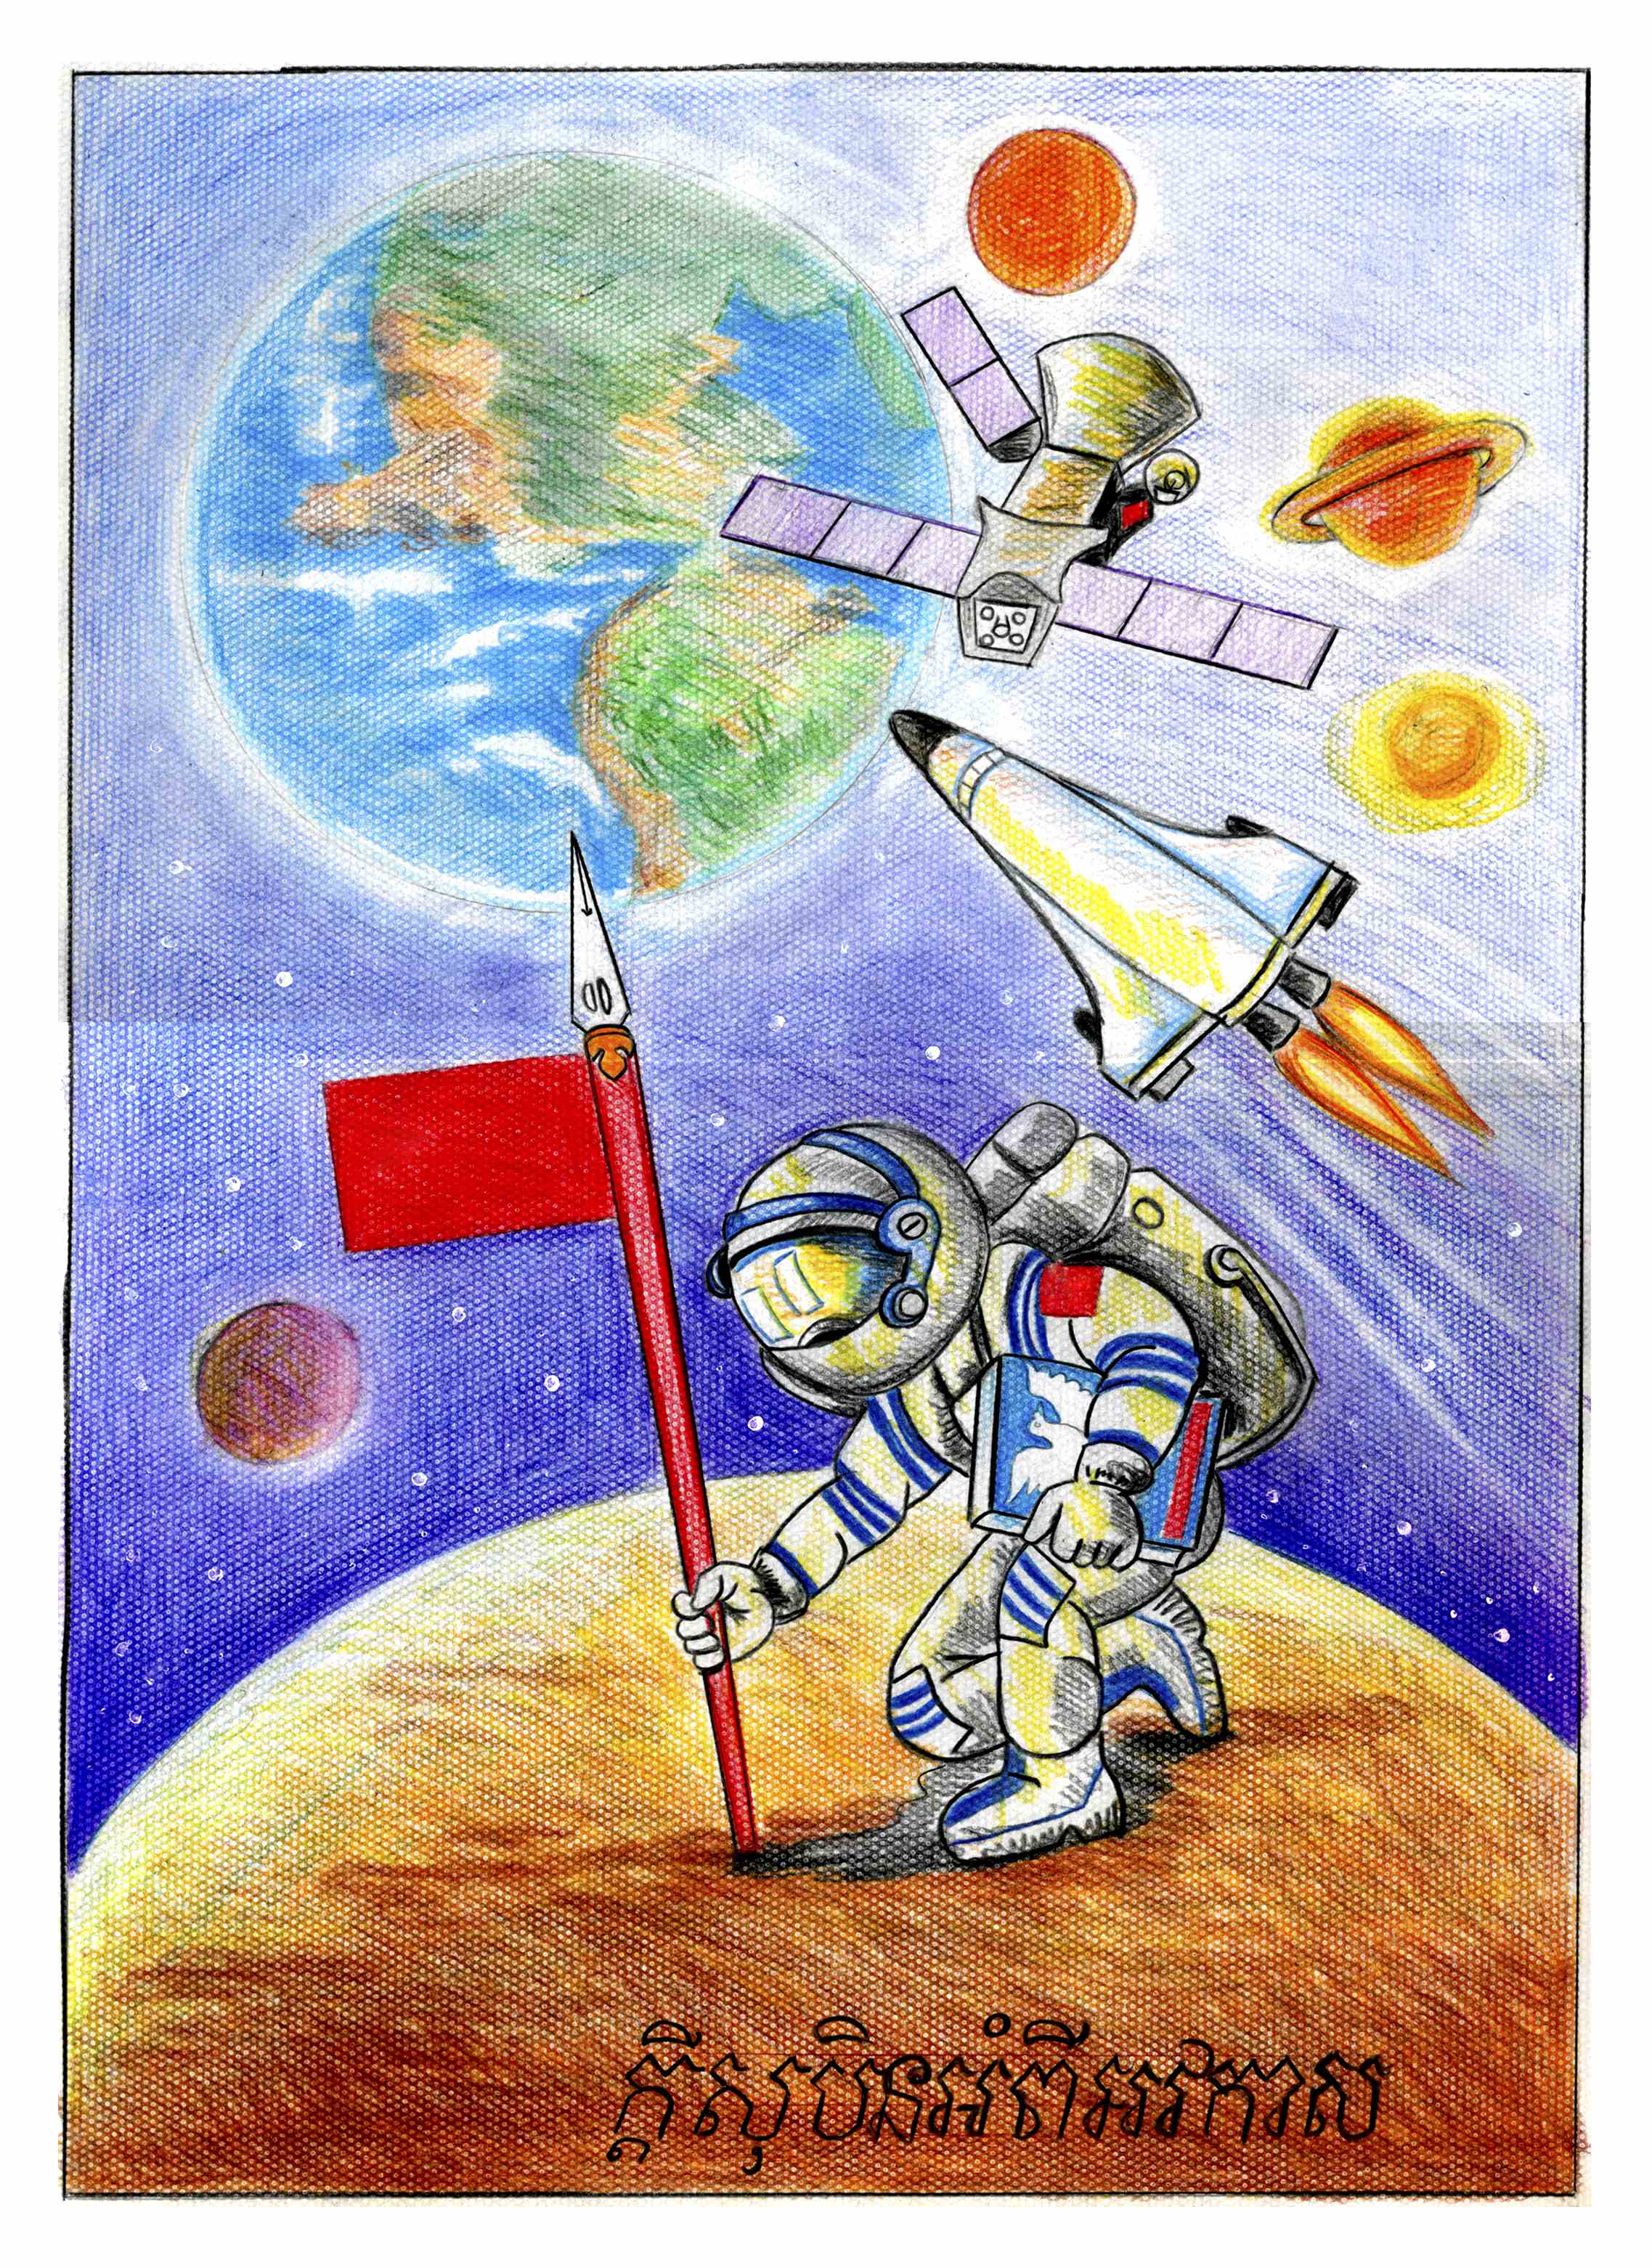 航天日绘画作品《和平星球》,里索班·帕乌东